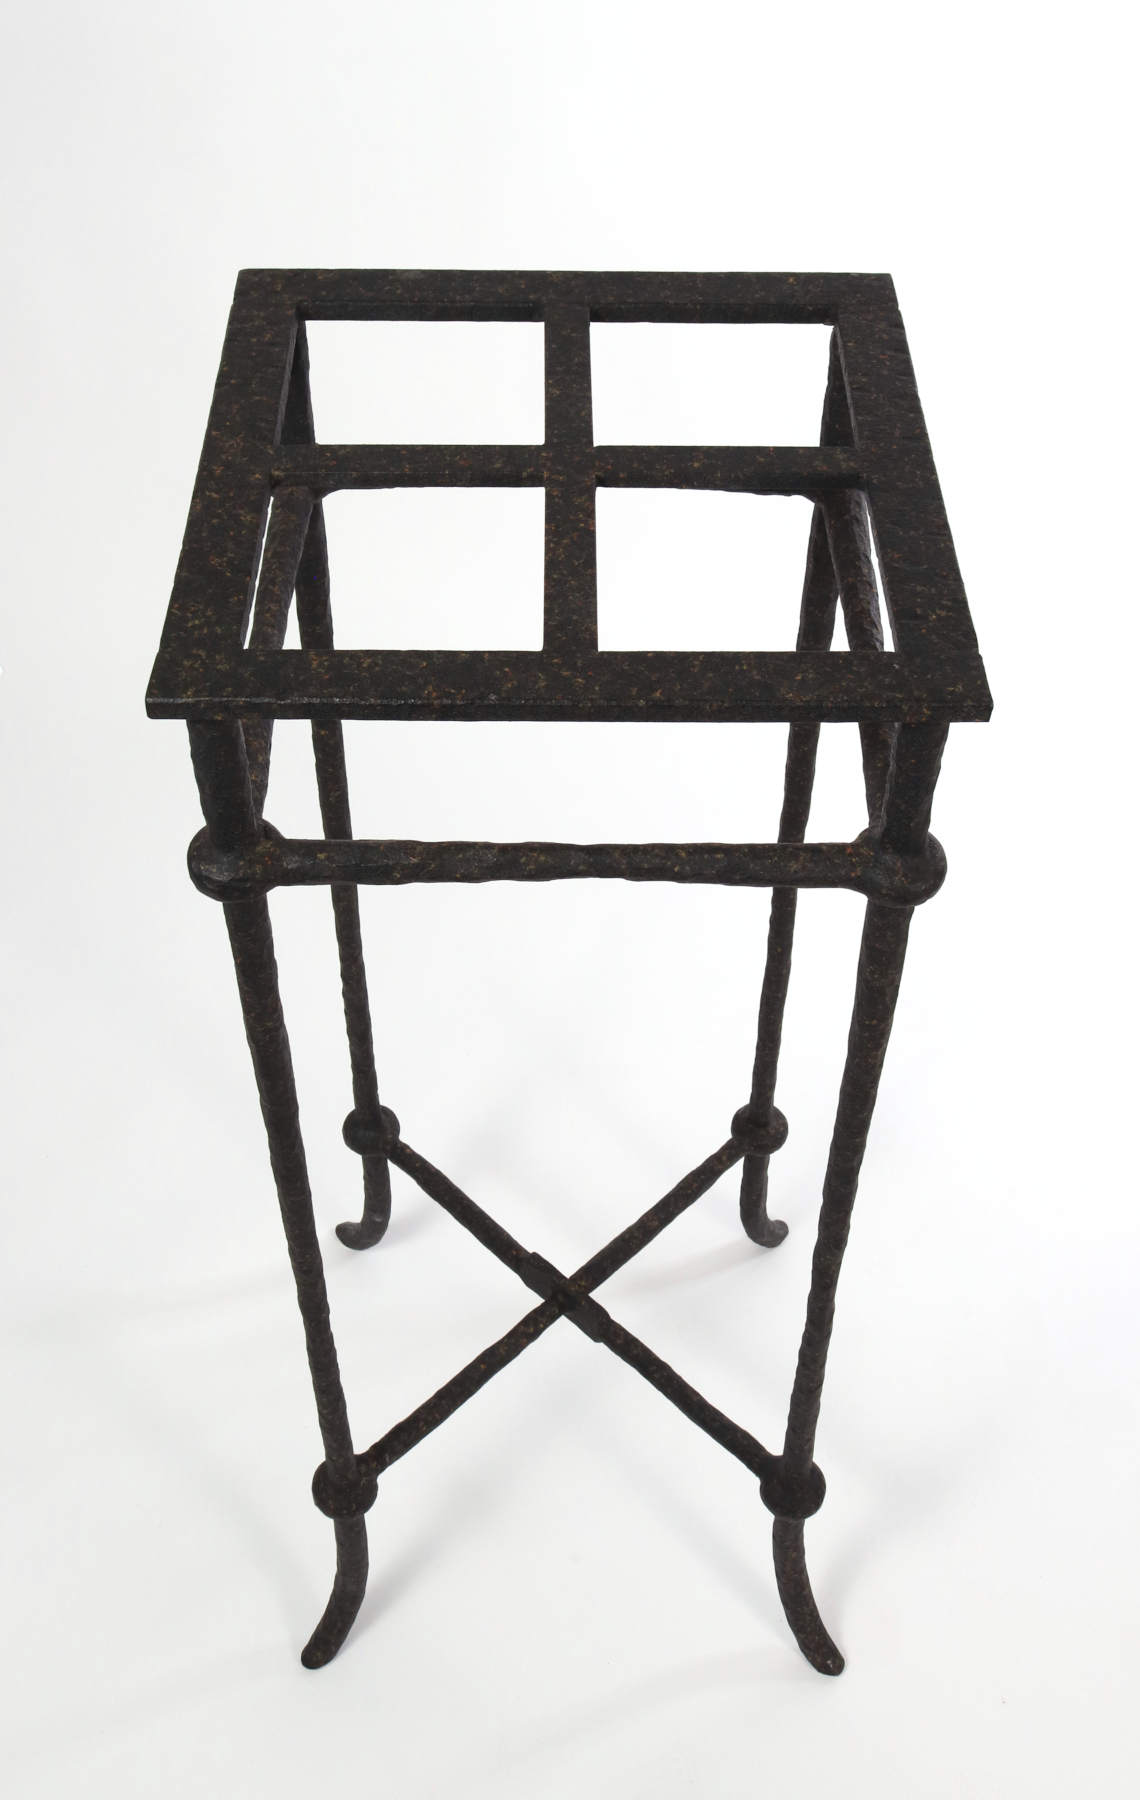 Modernist Wrought Iron Pedestal, 20thc.